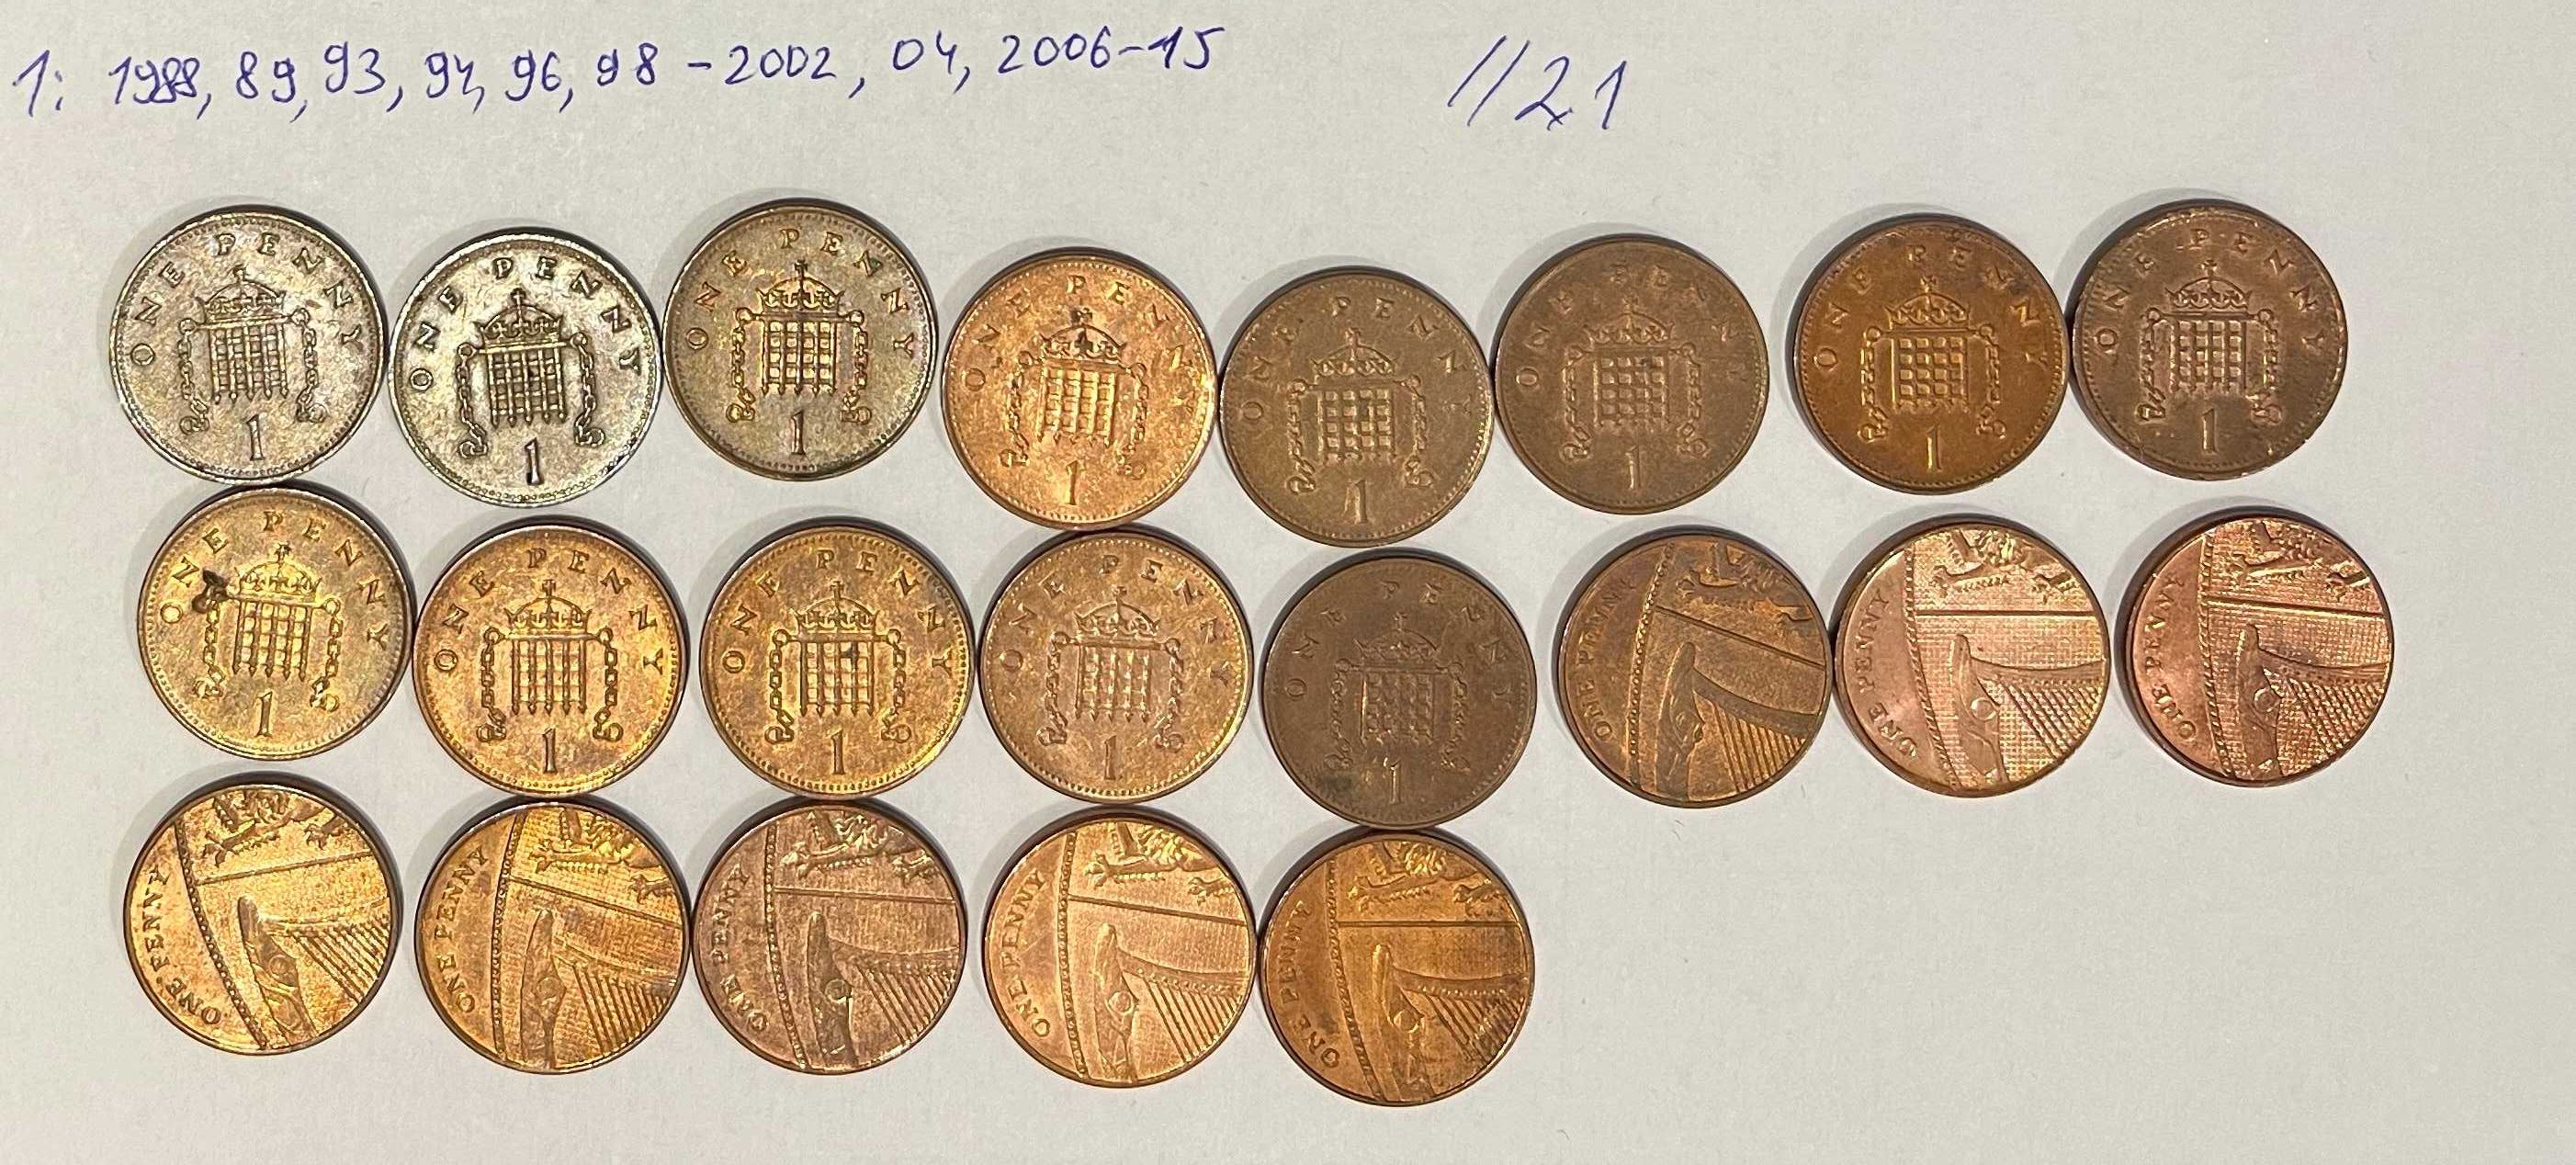 1 пенні Великої Британії (по рокам 23 + 21 шт.)